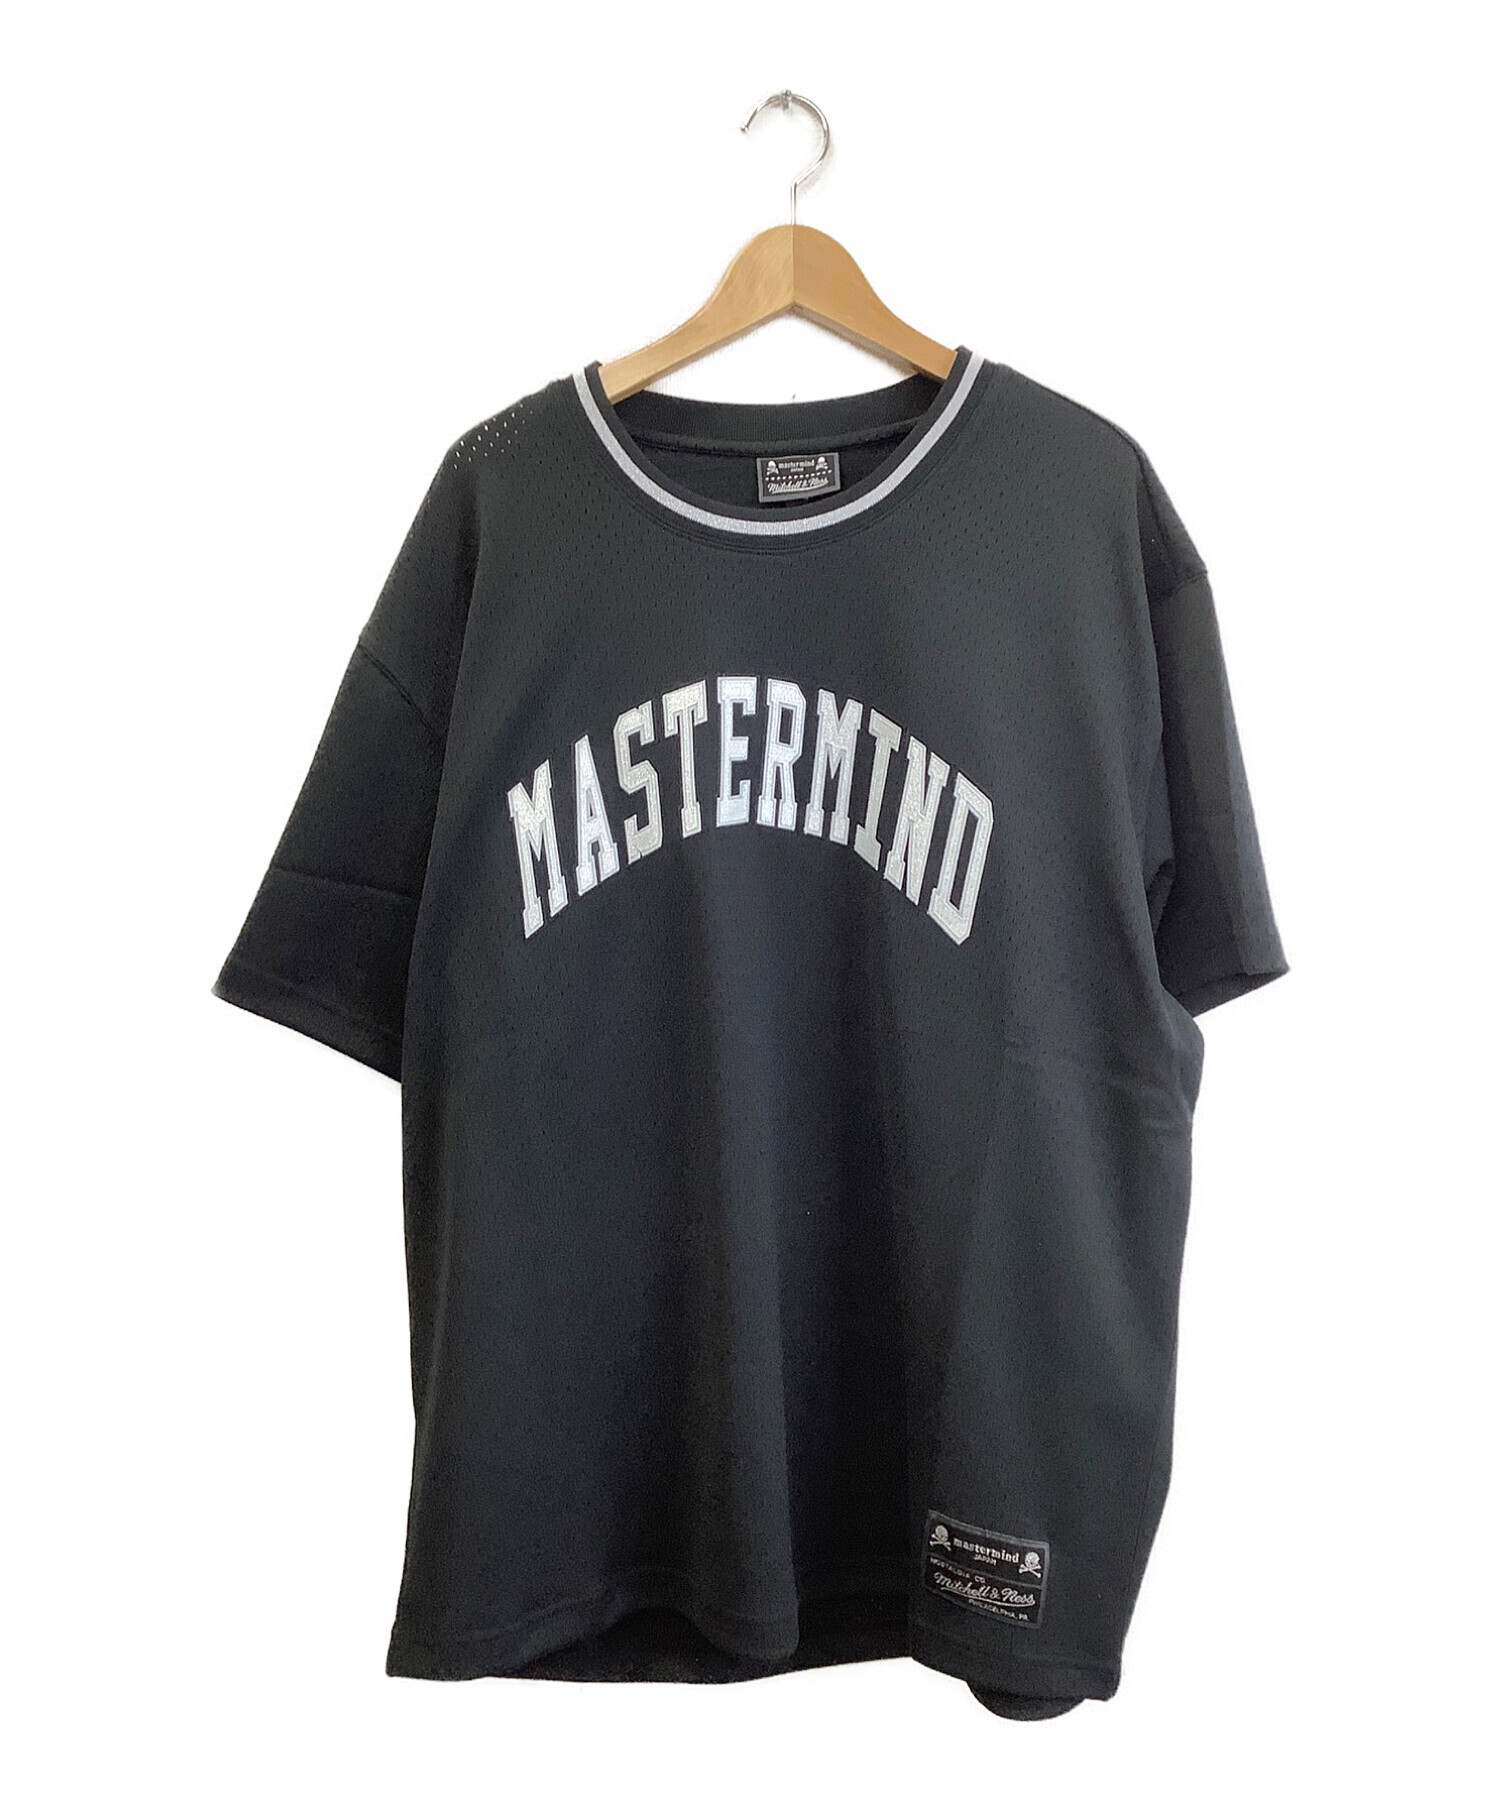 mastermind japan×mitchell & ness (マスターマインド ジャパン) ベースボールシャツ ブラック×ホワイト サイズ:XL  未使用品